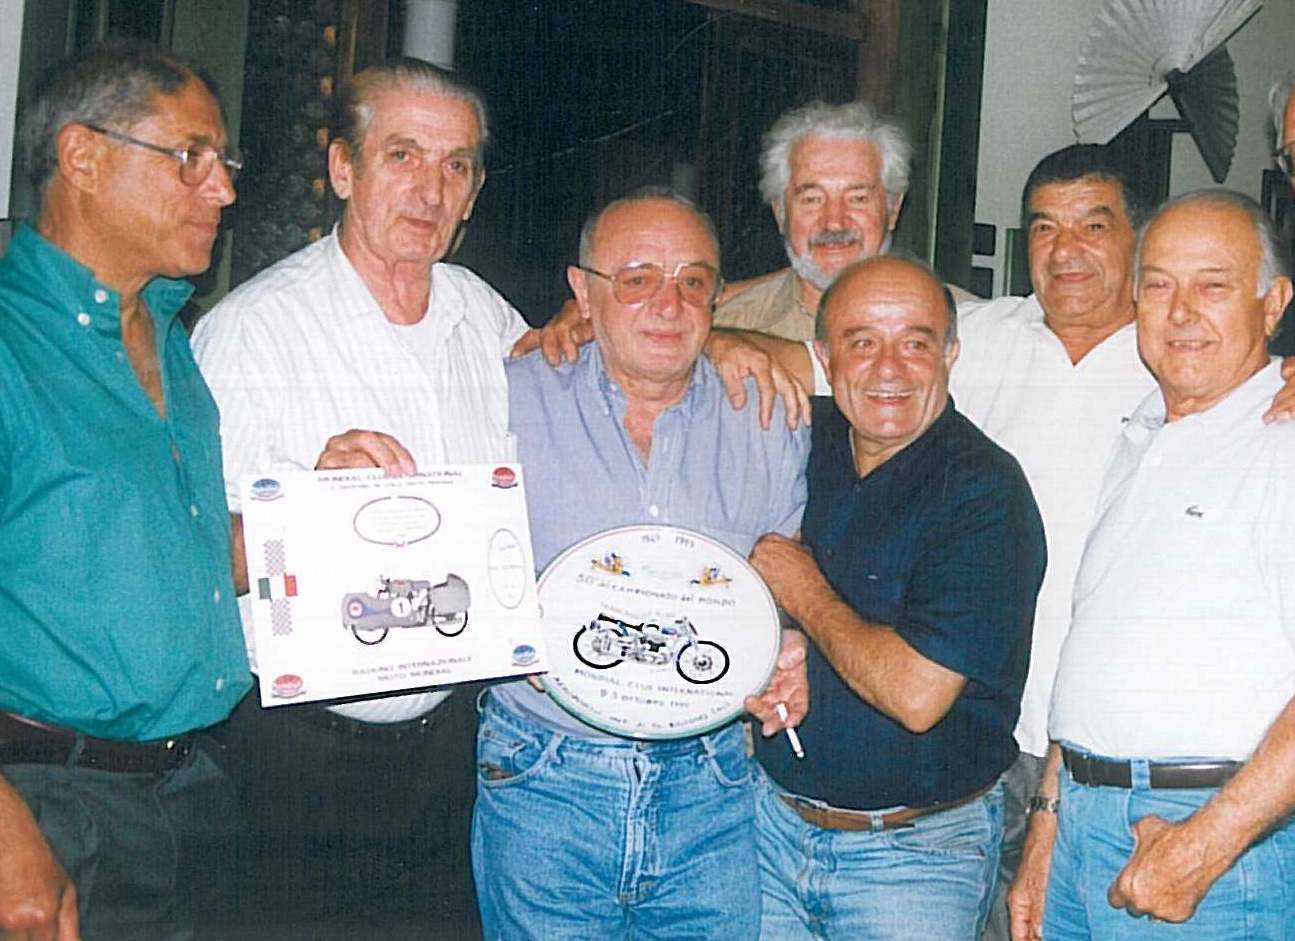 Mòndial Day 1999 - da sinistra: C.Galliani, U.Masetti, A.Trancanelli, F.Sabatini, T.Provini, R.Venturi. Alle spalle di Sabatini G.Ridenti.